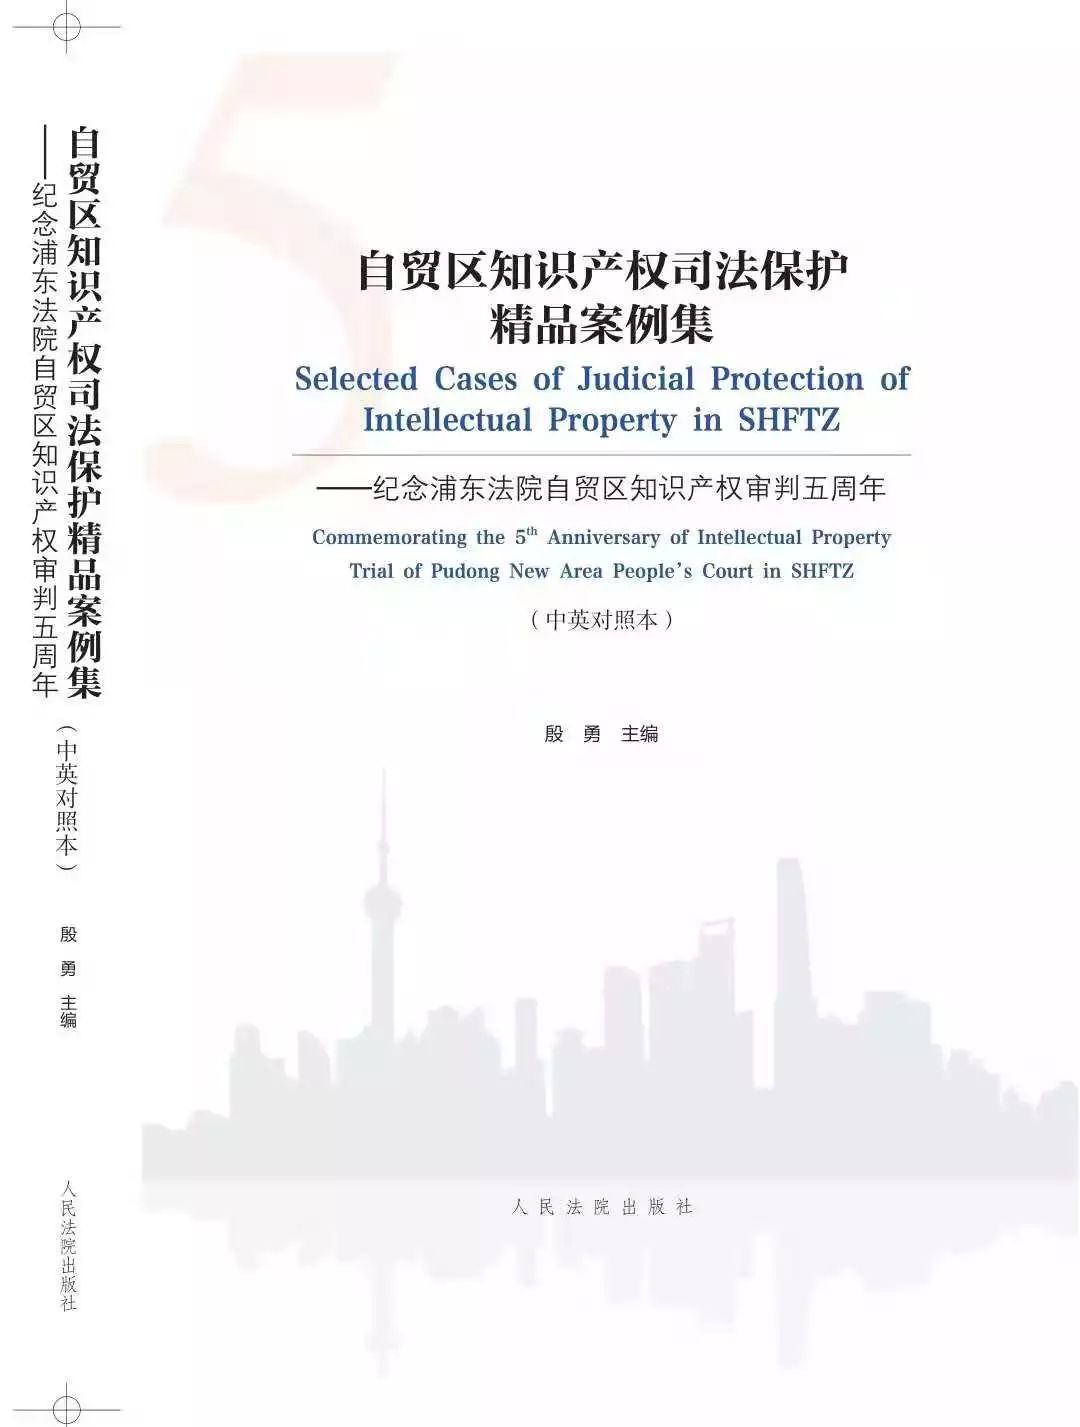 上海自由贸易试验区知识产权司法保护建设五年情况（附：精品案例集）